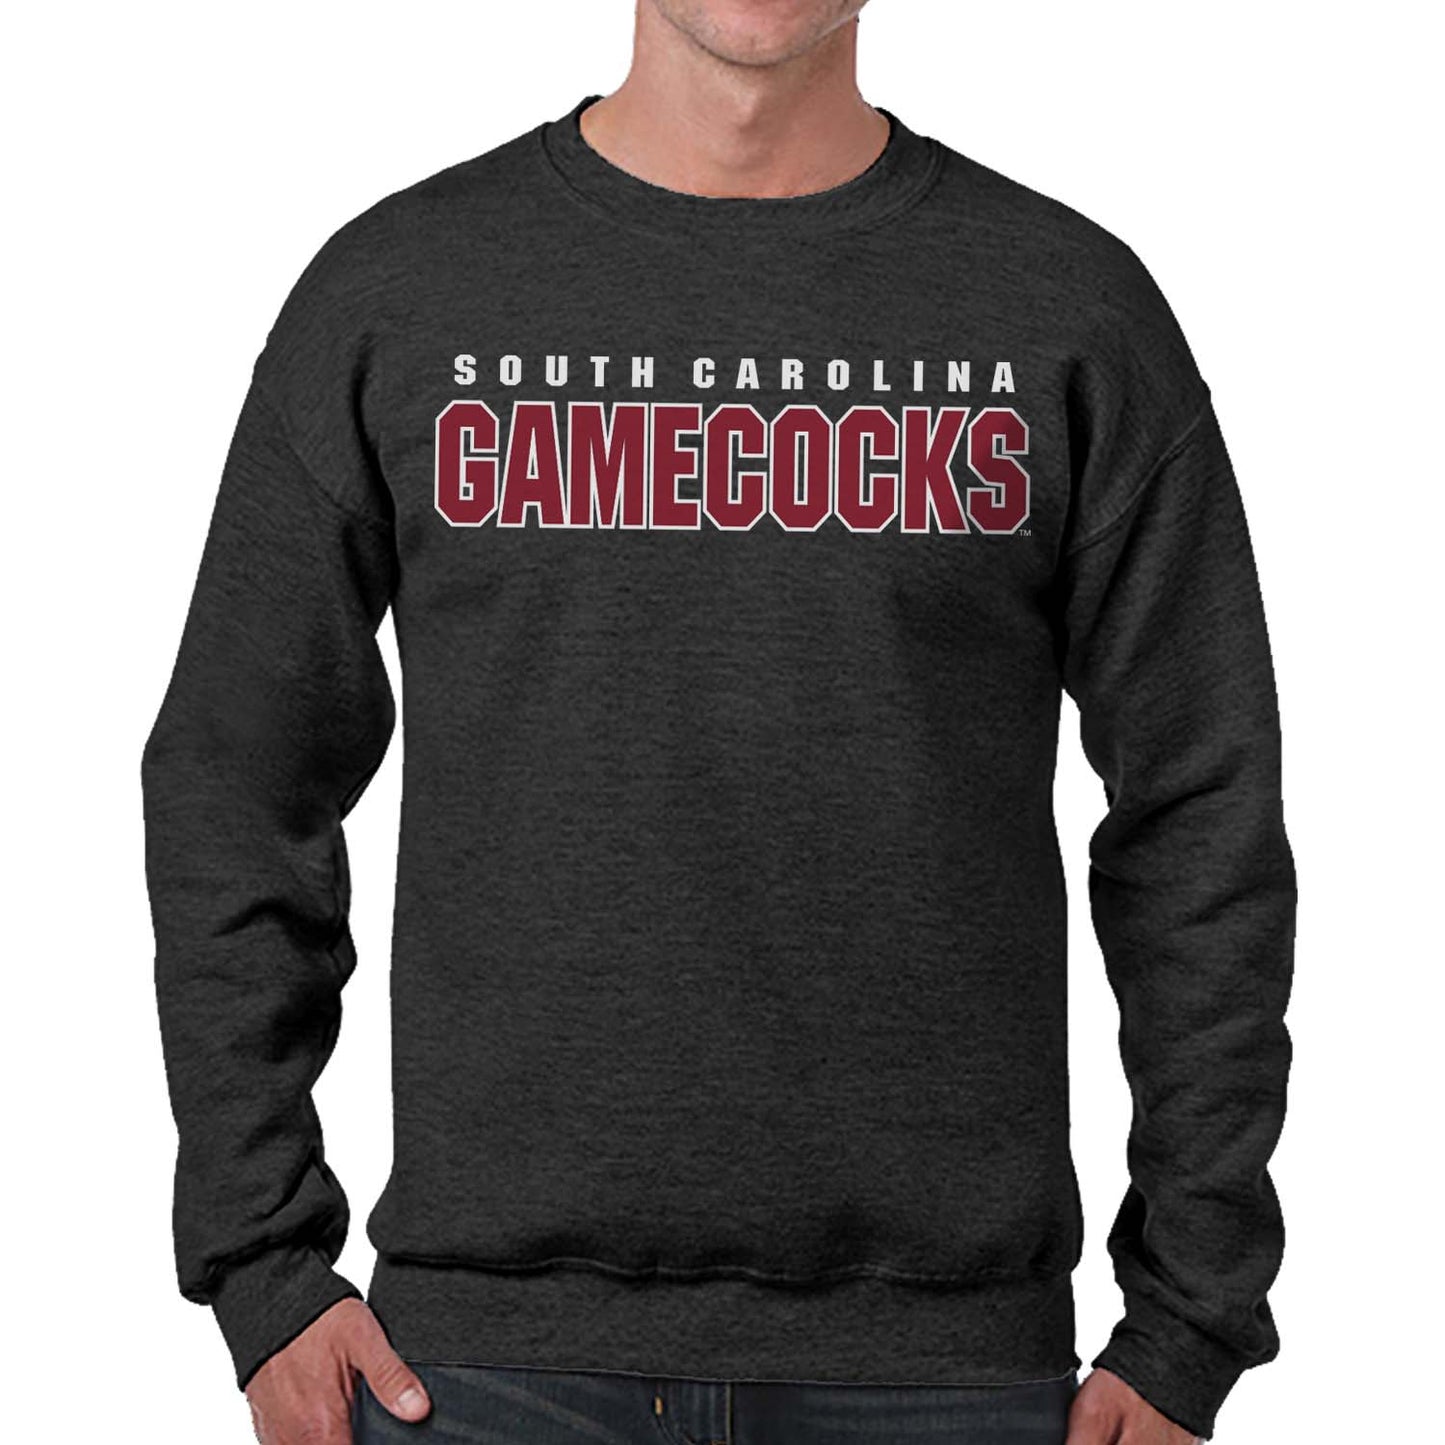 South Carolina Gamecocks NCAA Adult Charcoal Crewneck Fleece Sweatshirt - Charcoal